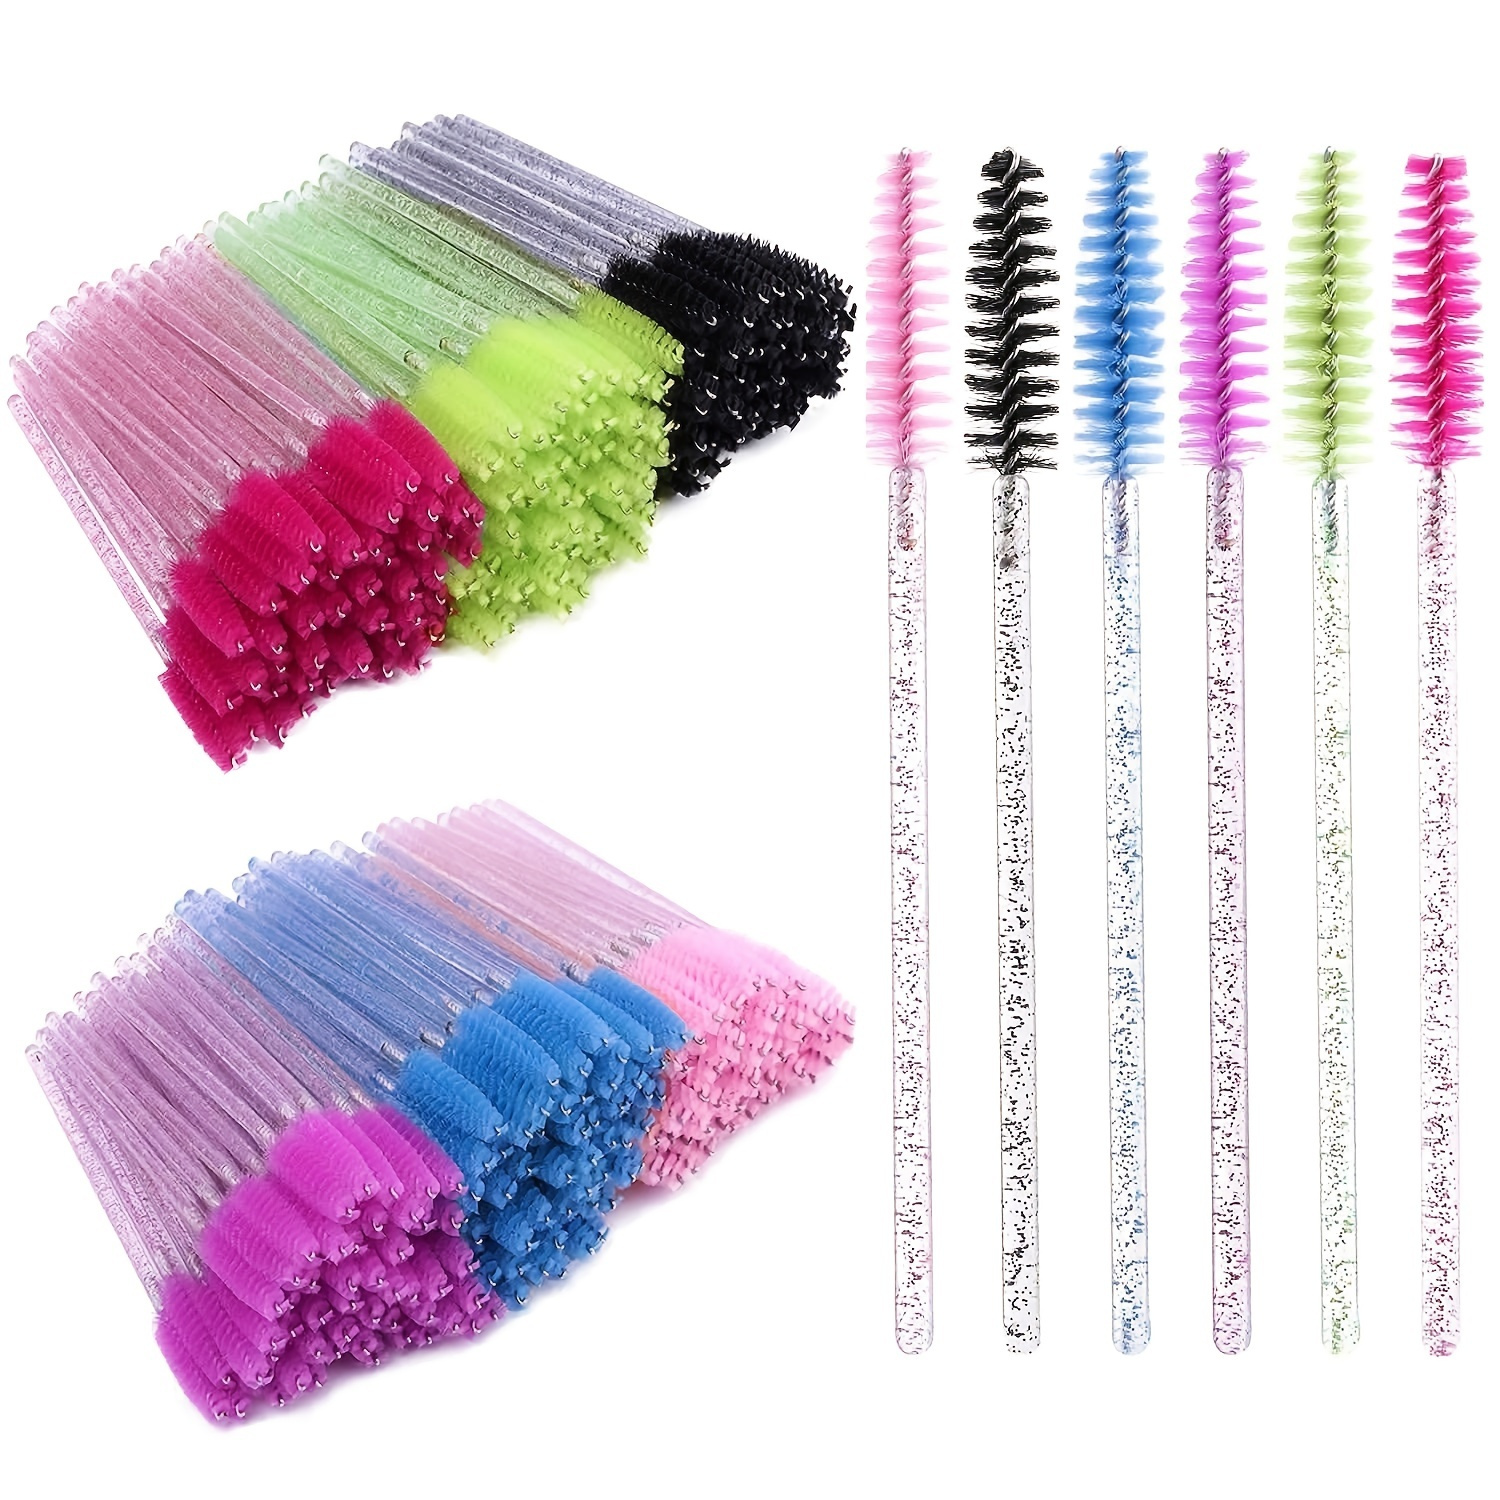 

25 Pcs/pack Disposable Crystal Eyelash Mascara Brushes Wands Applicator Makeup Kits